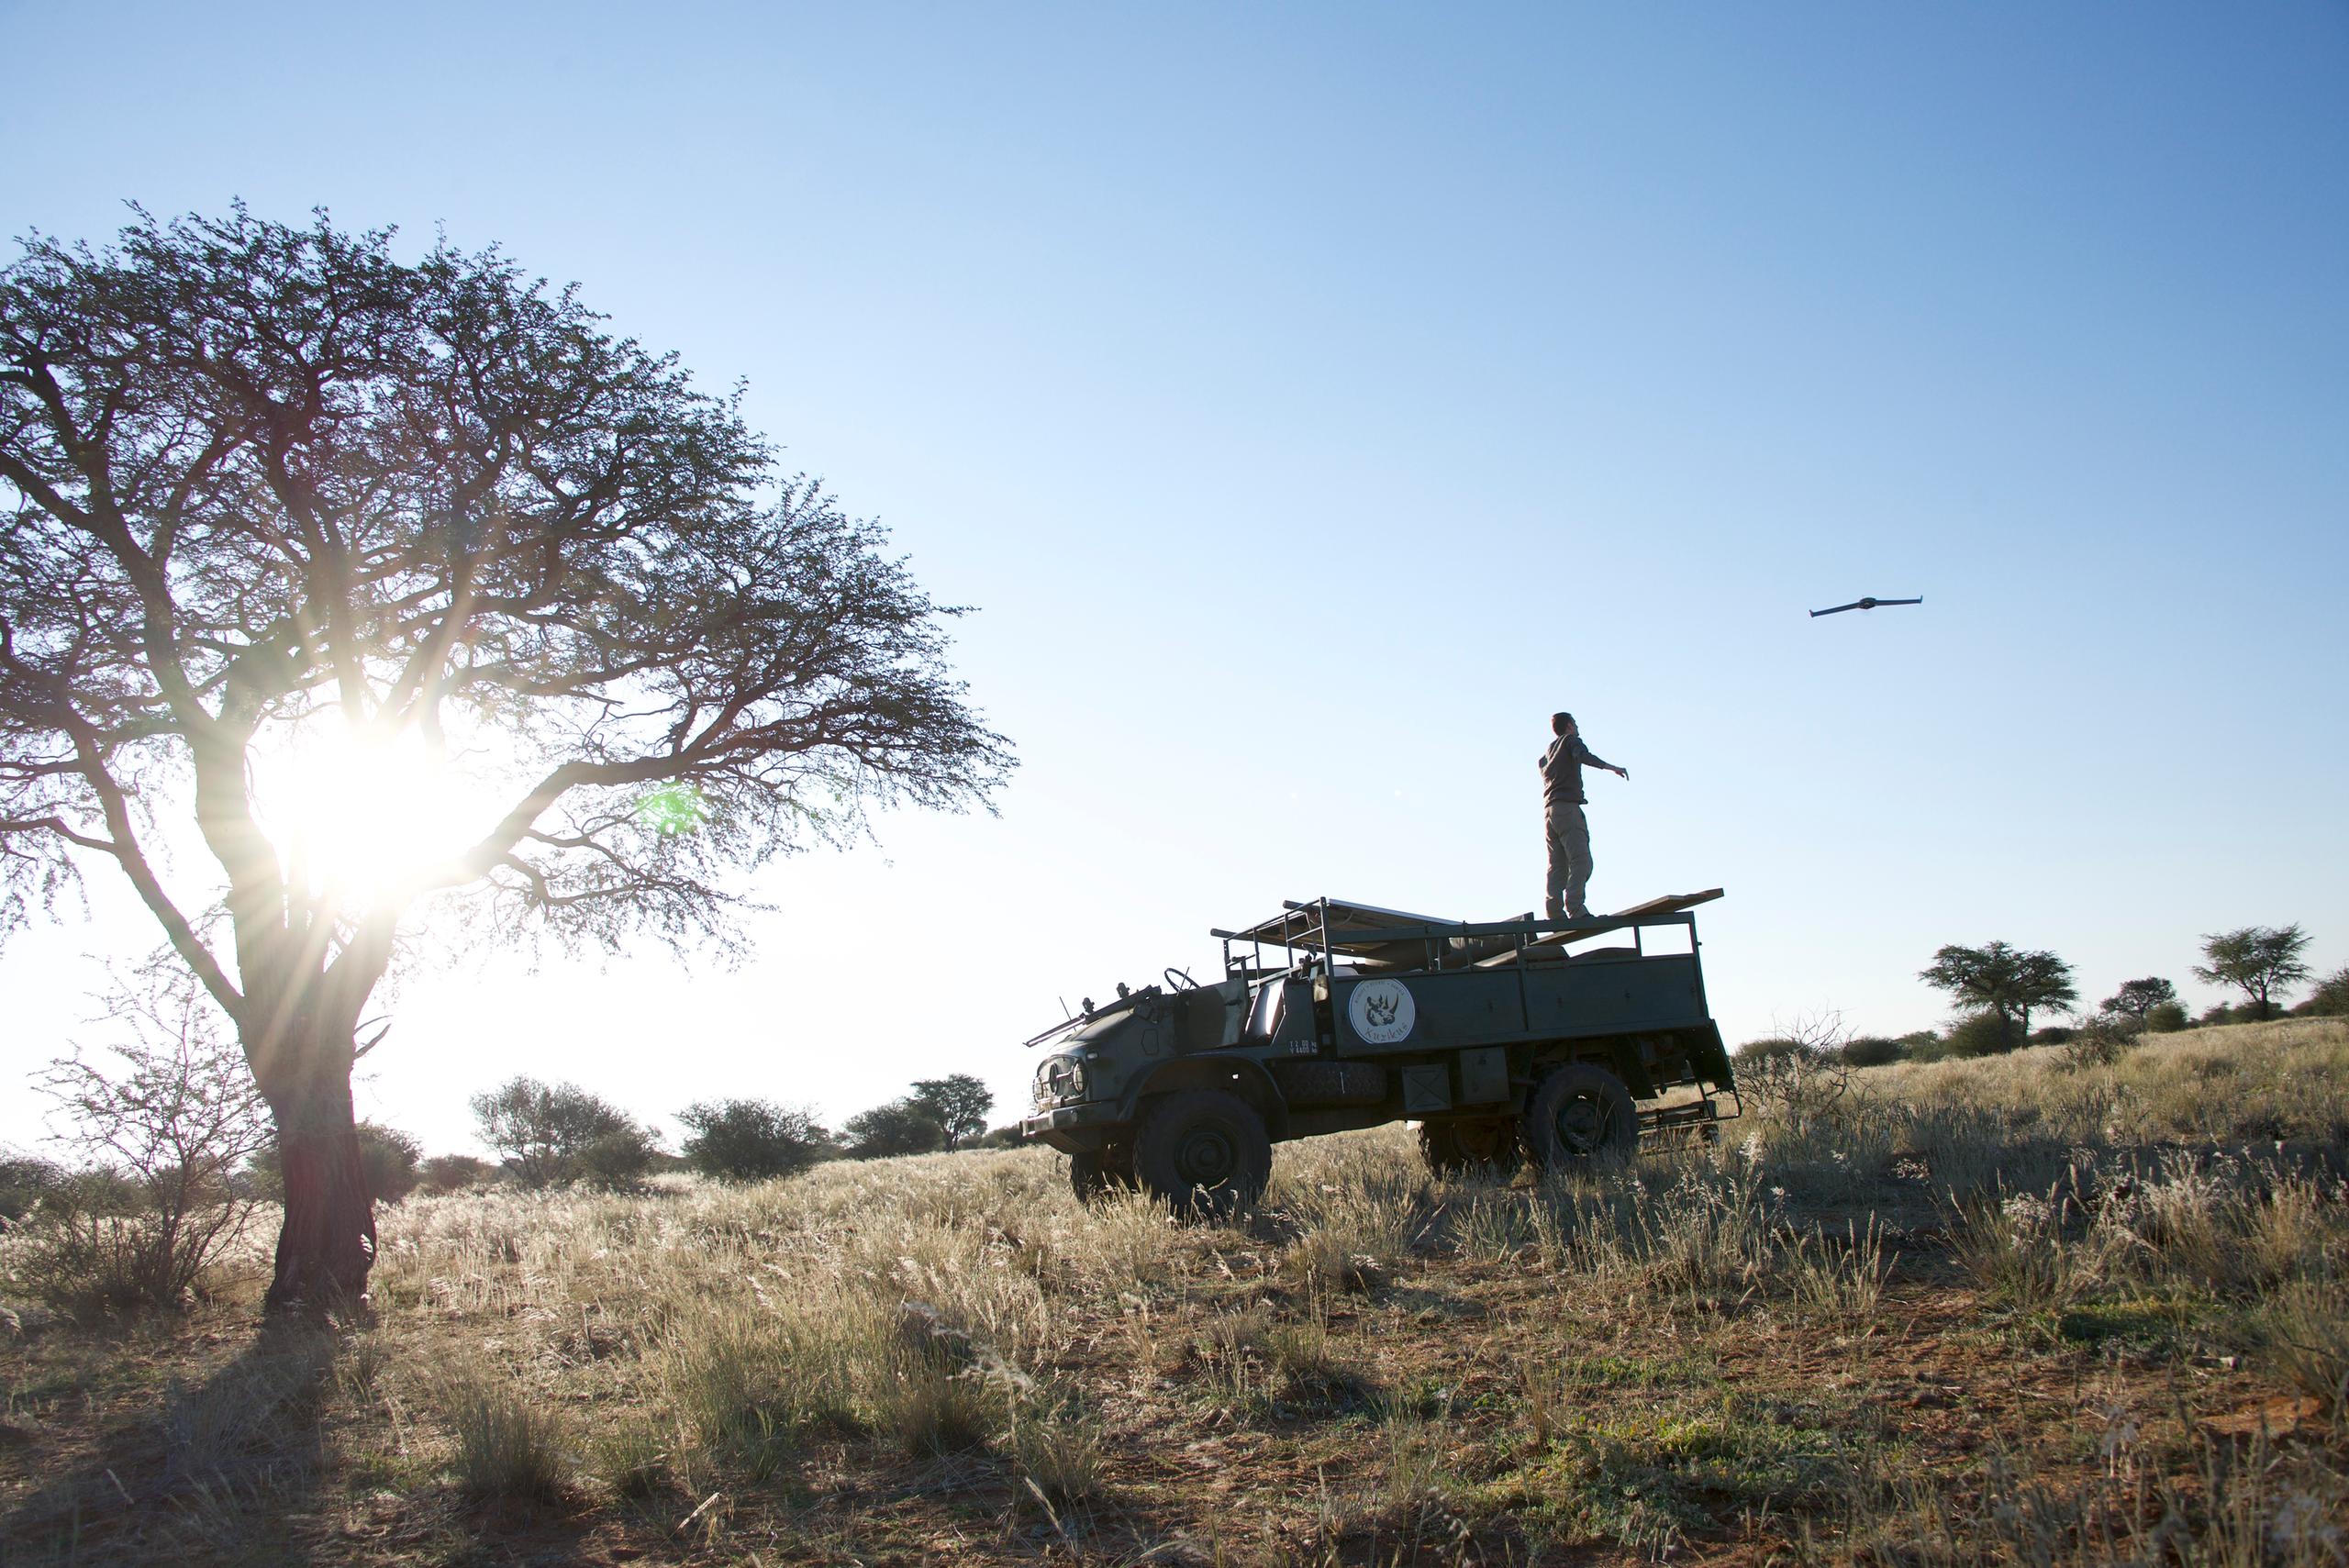 Safari-Jeep mit Mann auf Ladefläche, der eine Drohne steuert